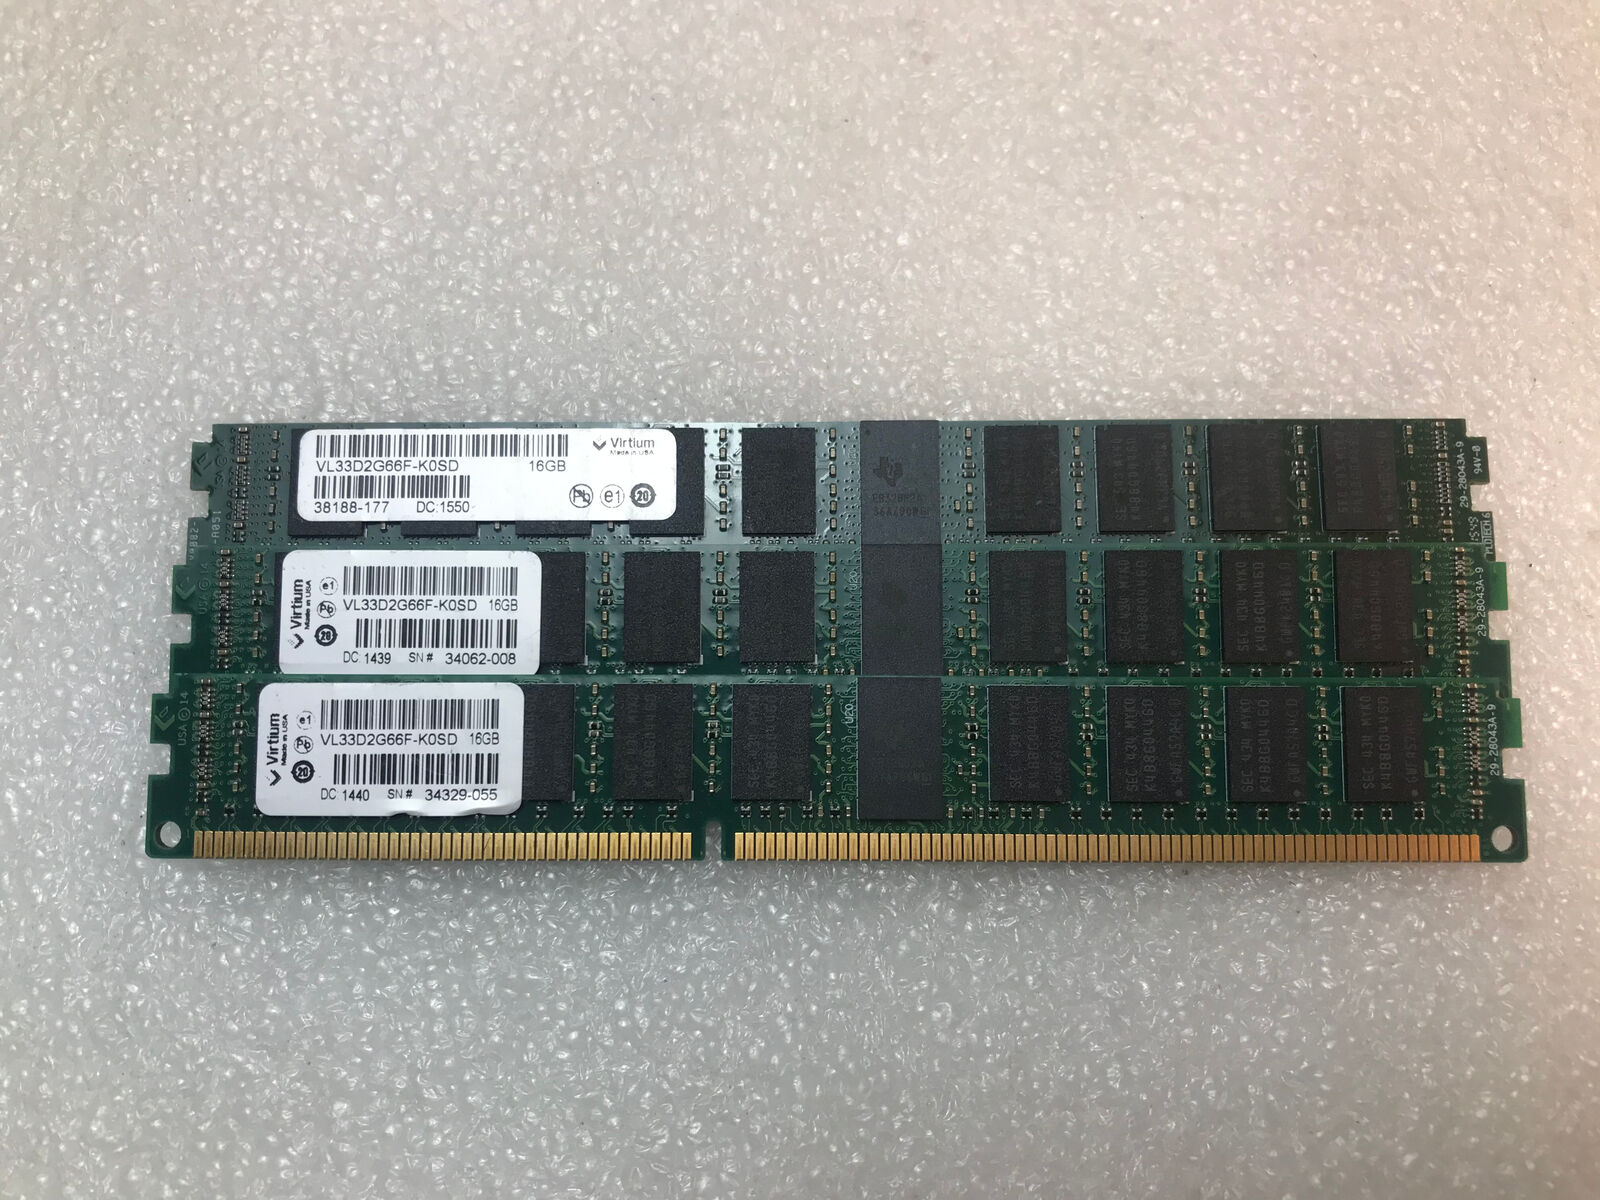 48GB Lot of 3 Virtium VLP RAM RDIMM 16GB DDR3 Registered ECC VL33D2G66F-K0SD